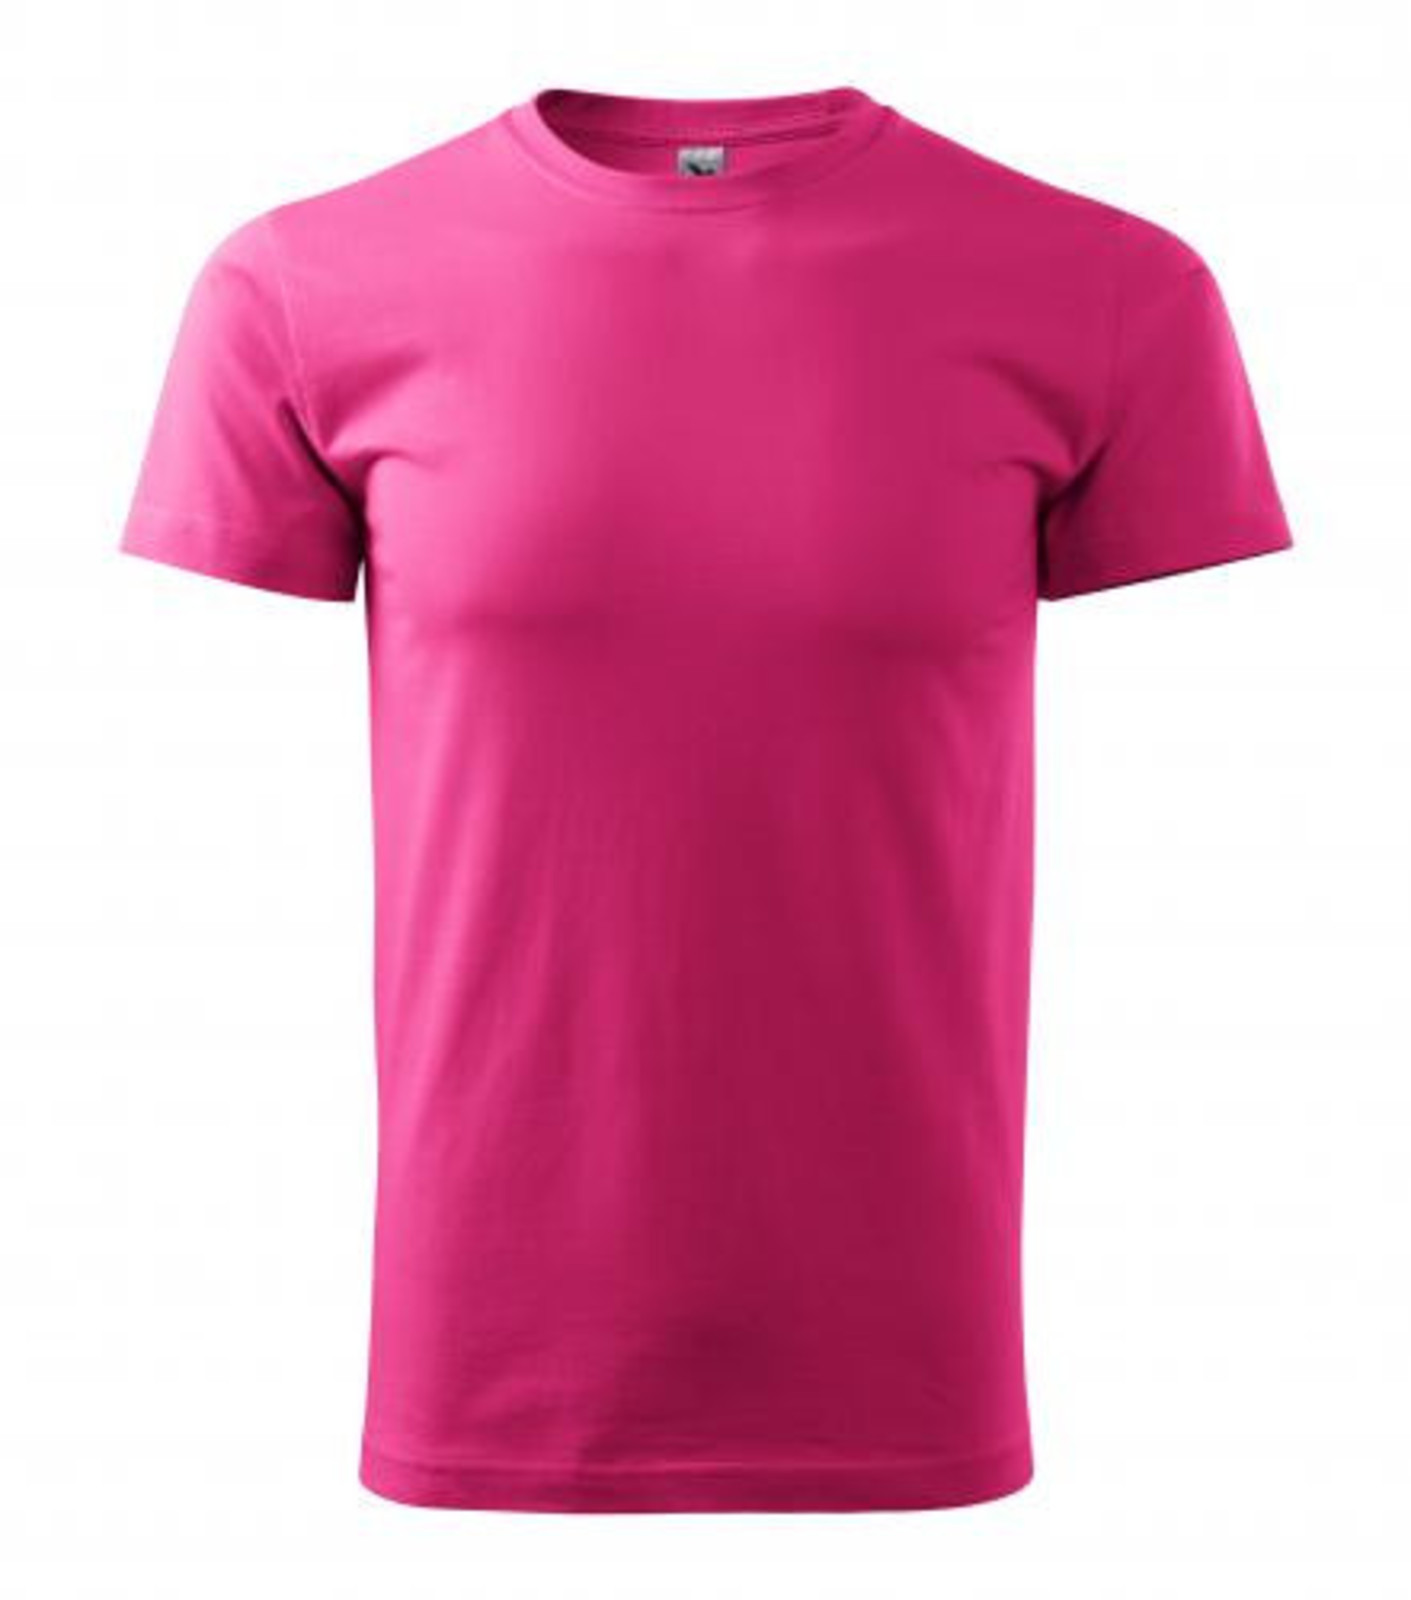 Unisex tričko Malfini Heavy New 137 - veľkosť: S, farba: purpurová